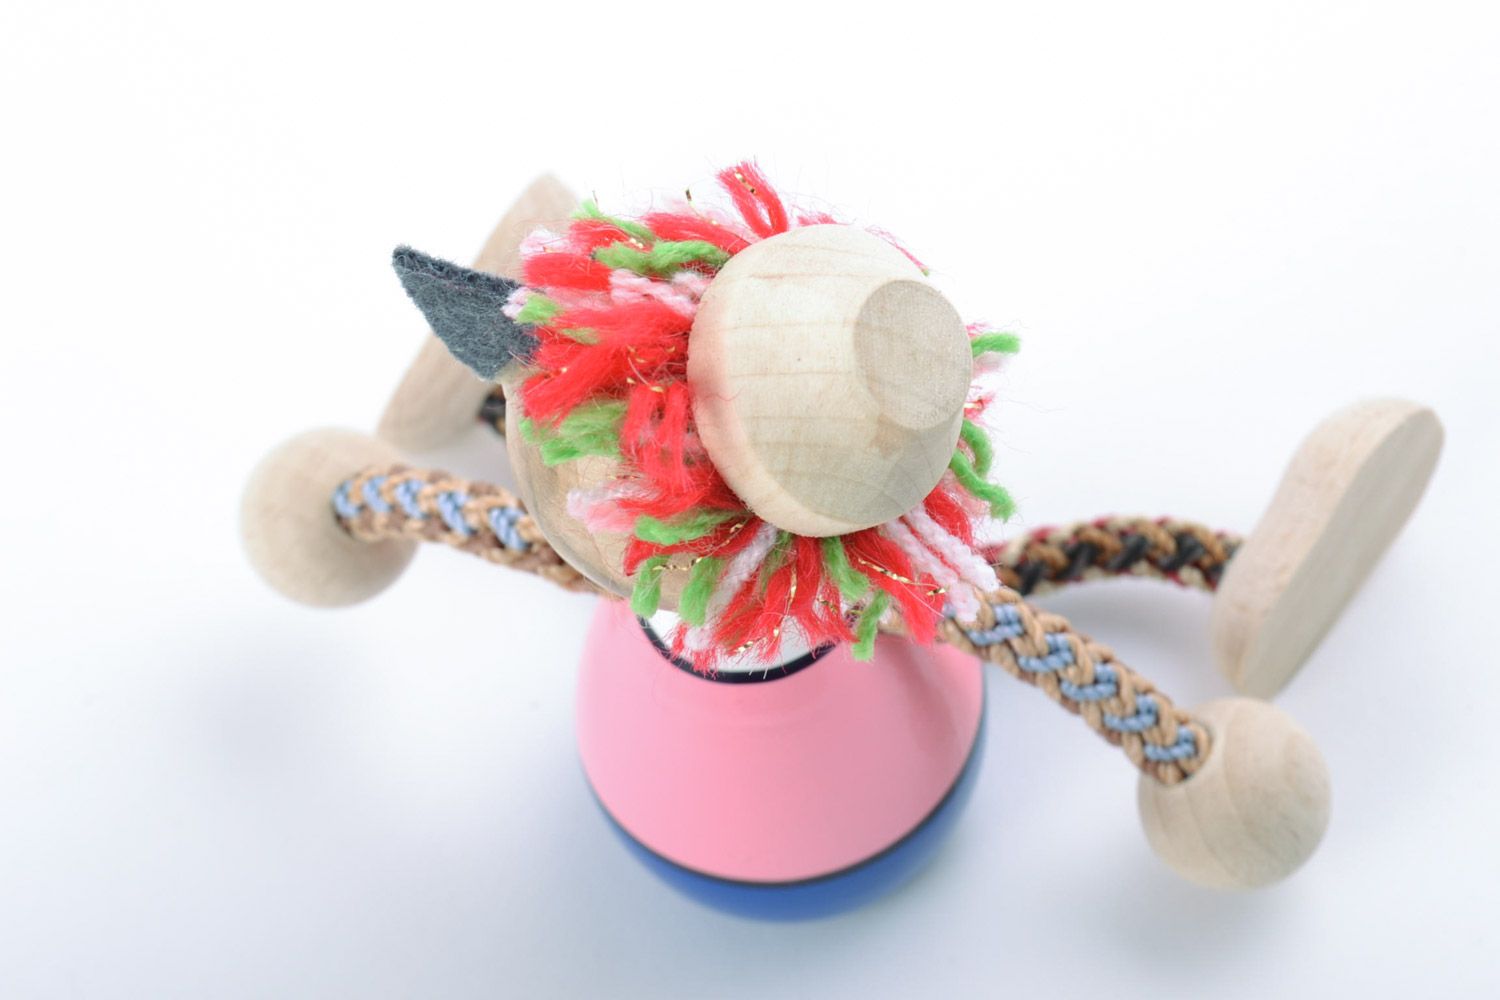 Holz Spielzeug Kater mit Farben bemalt grell Handarbeit Geschenk für Kinder  foto 4